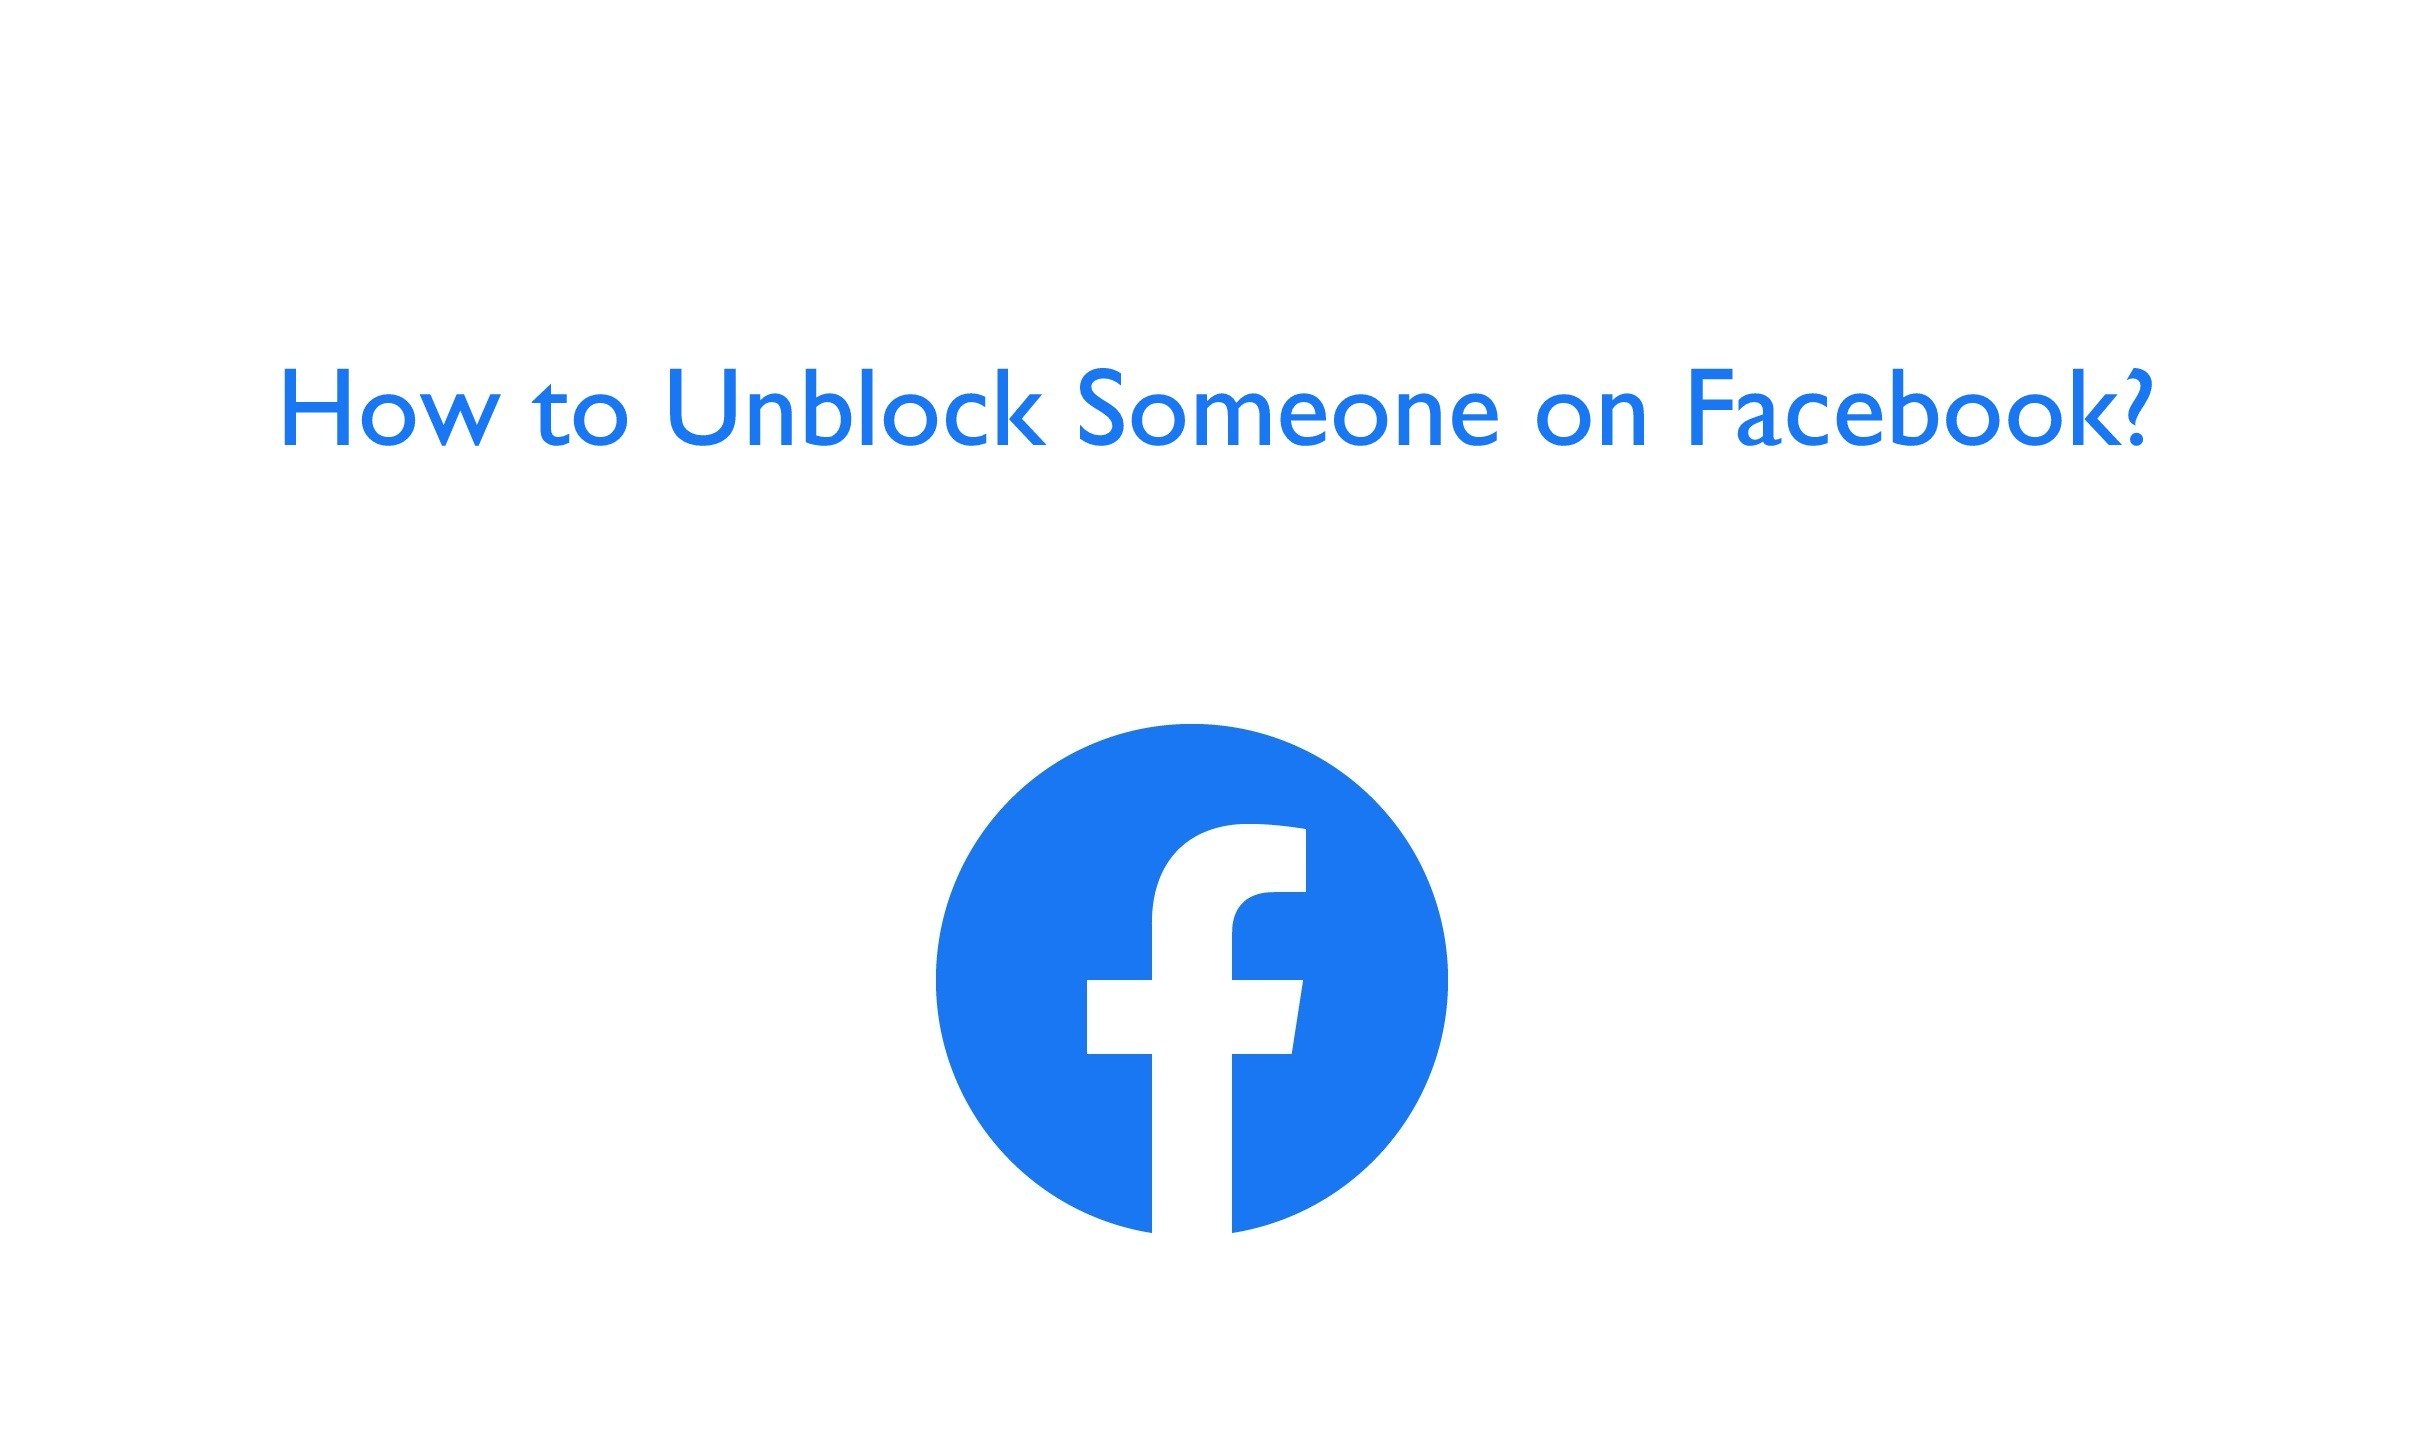 Norbaitek desblokeatu Facebook App eta Web erabiliz
